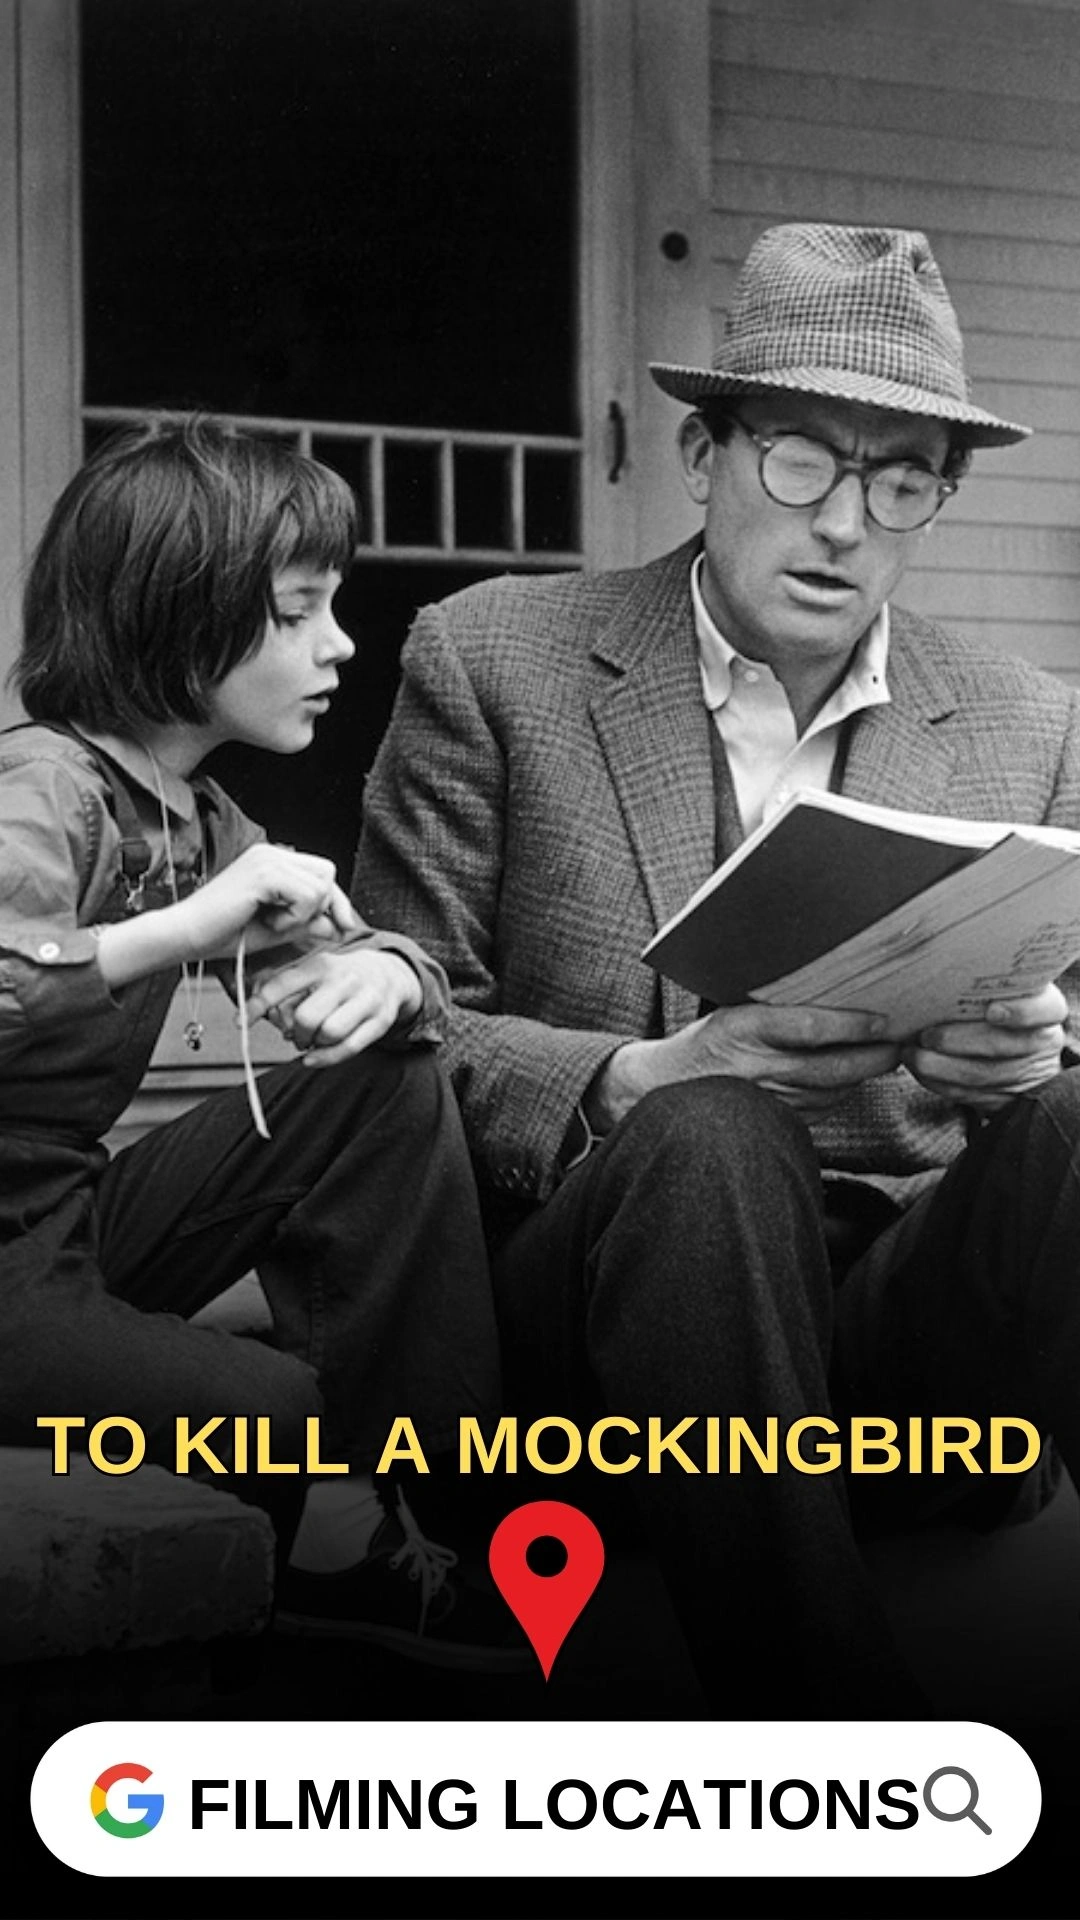 To Kill a Mockingbird Filming Locations